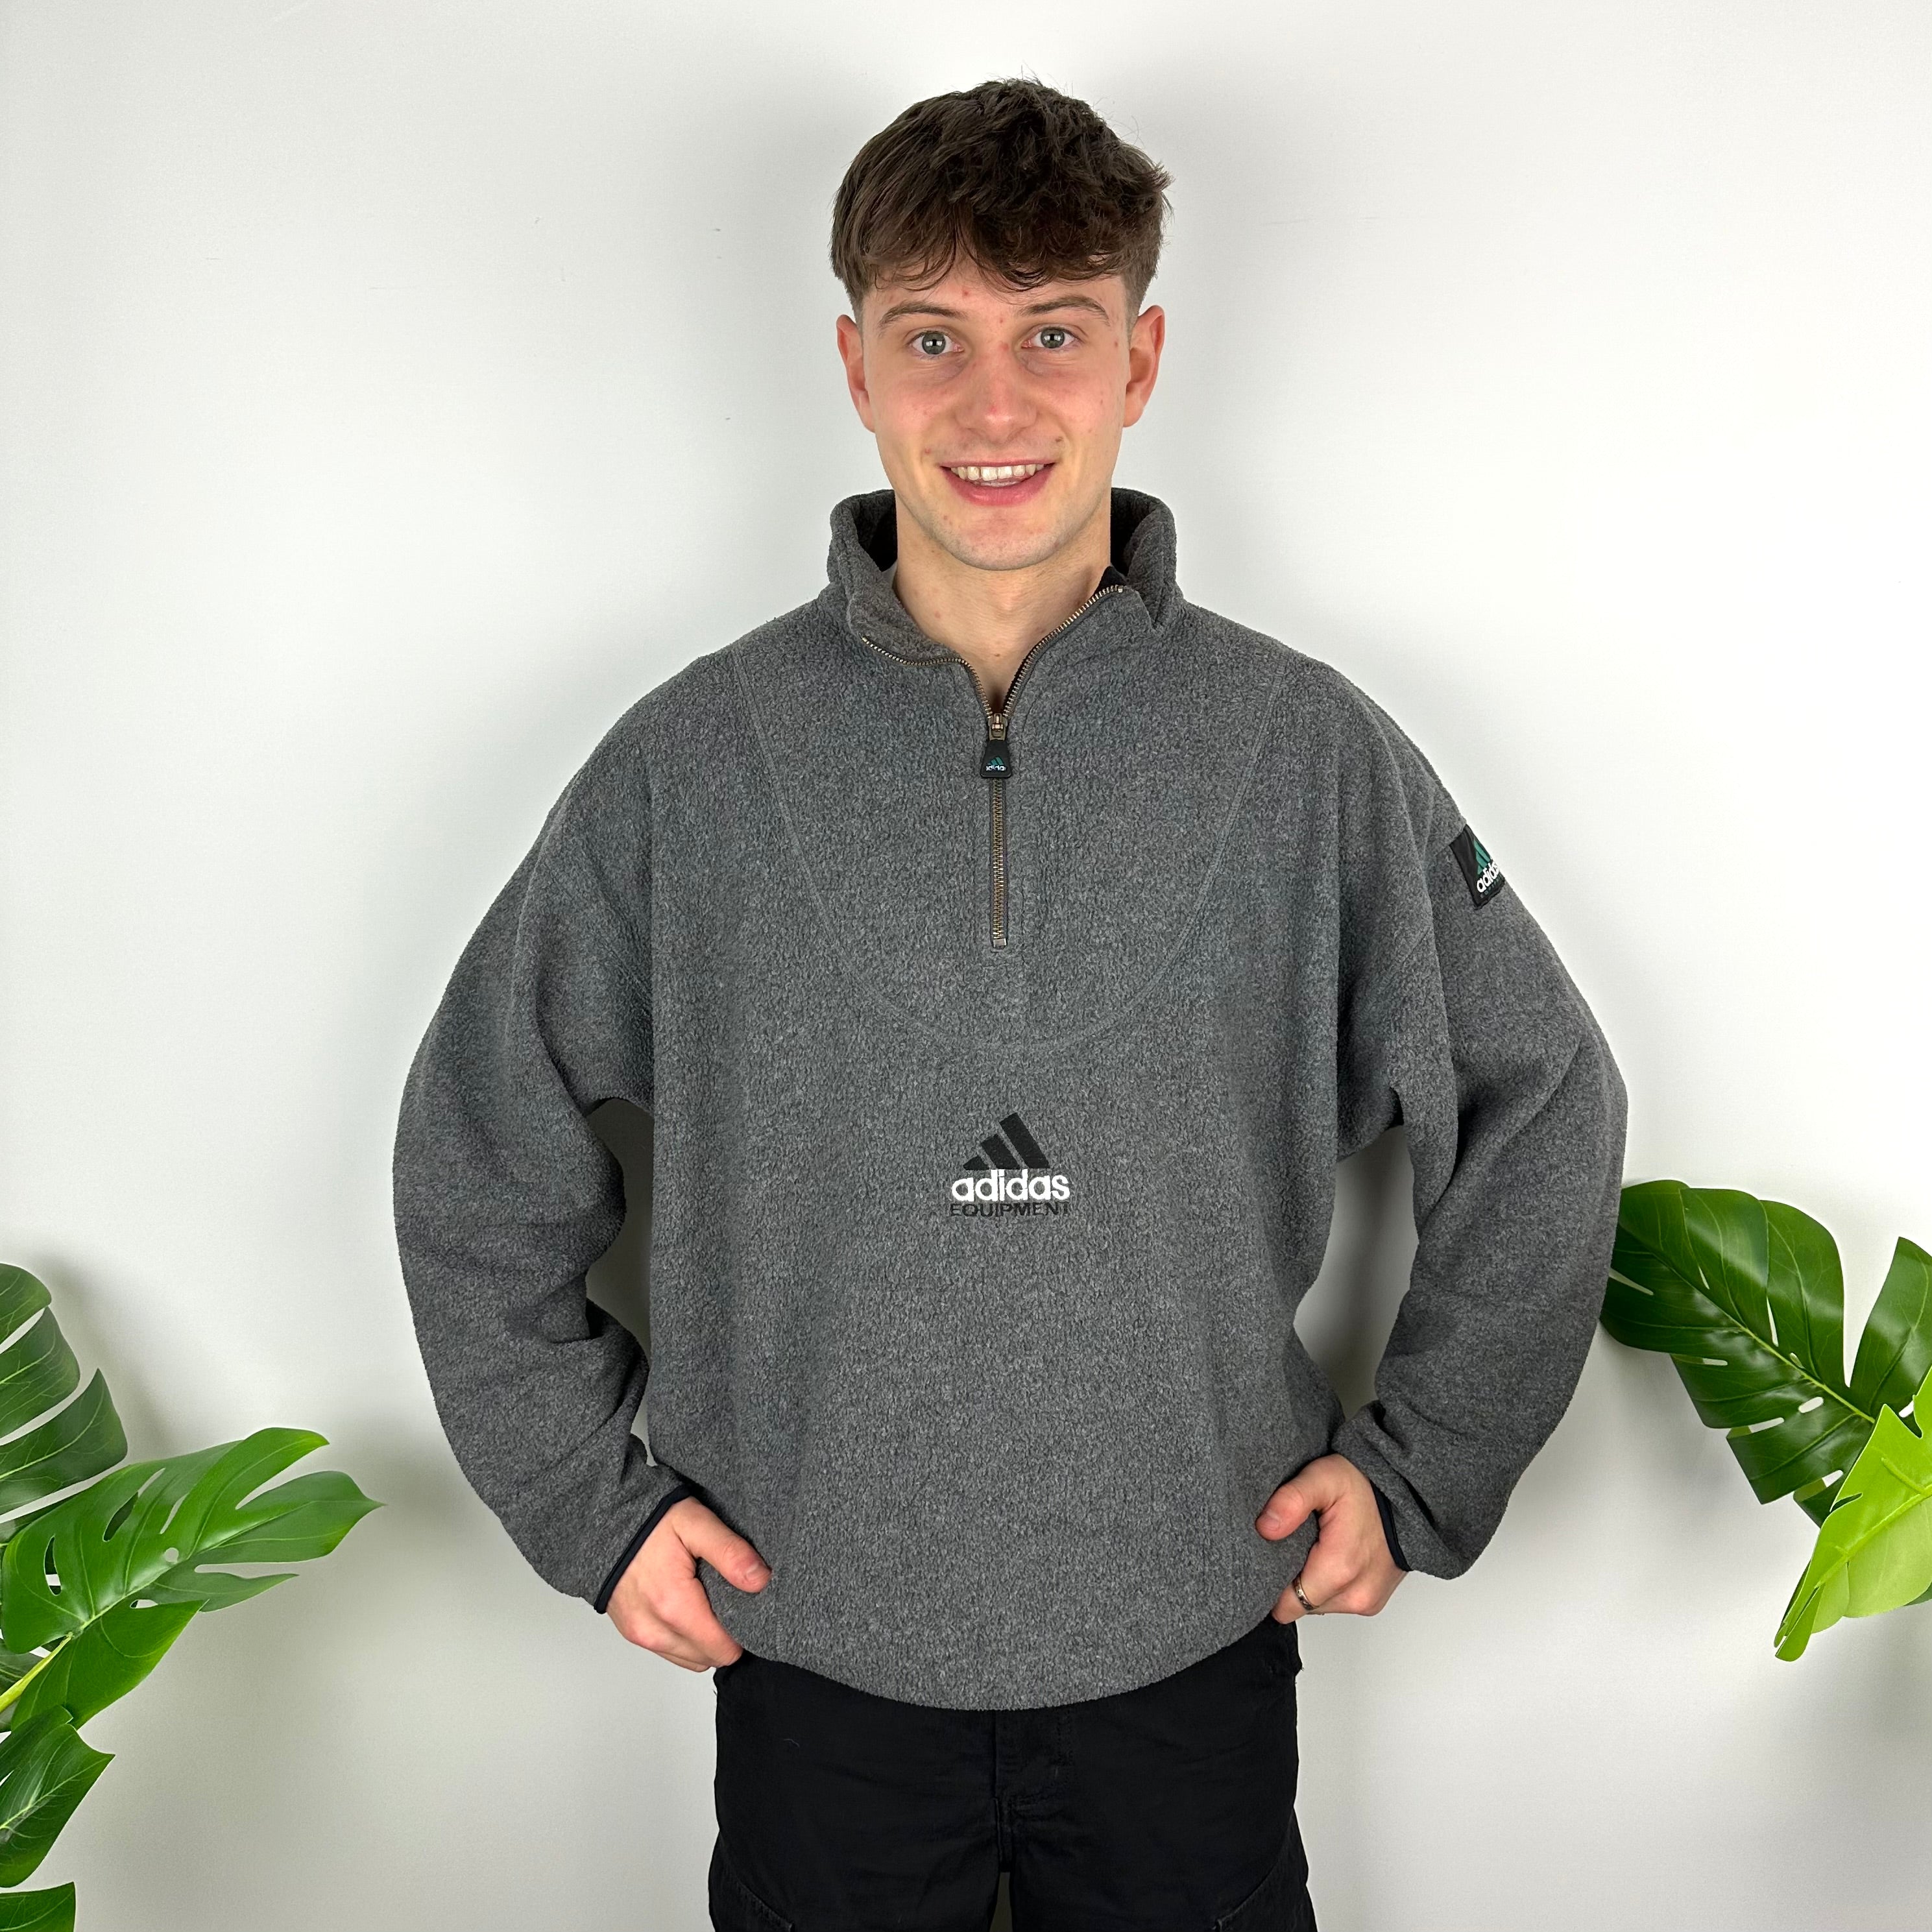 Adidas Equipment RARE Grey Embroidered Spell Out Teddy Bear Fleece Quarter Zip Sweatshirt (XL)